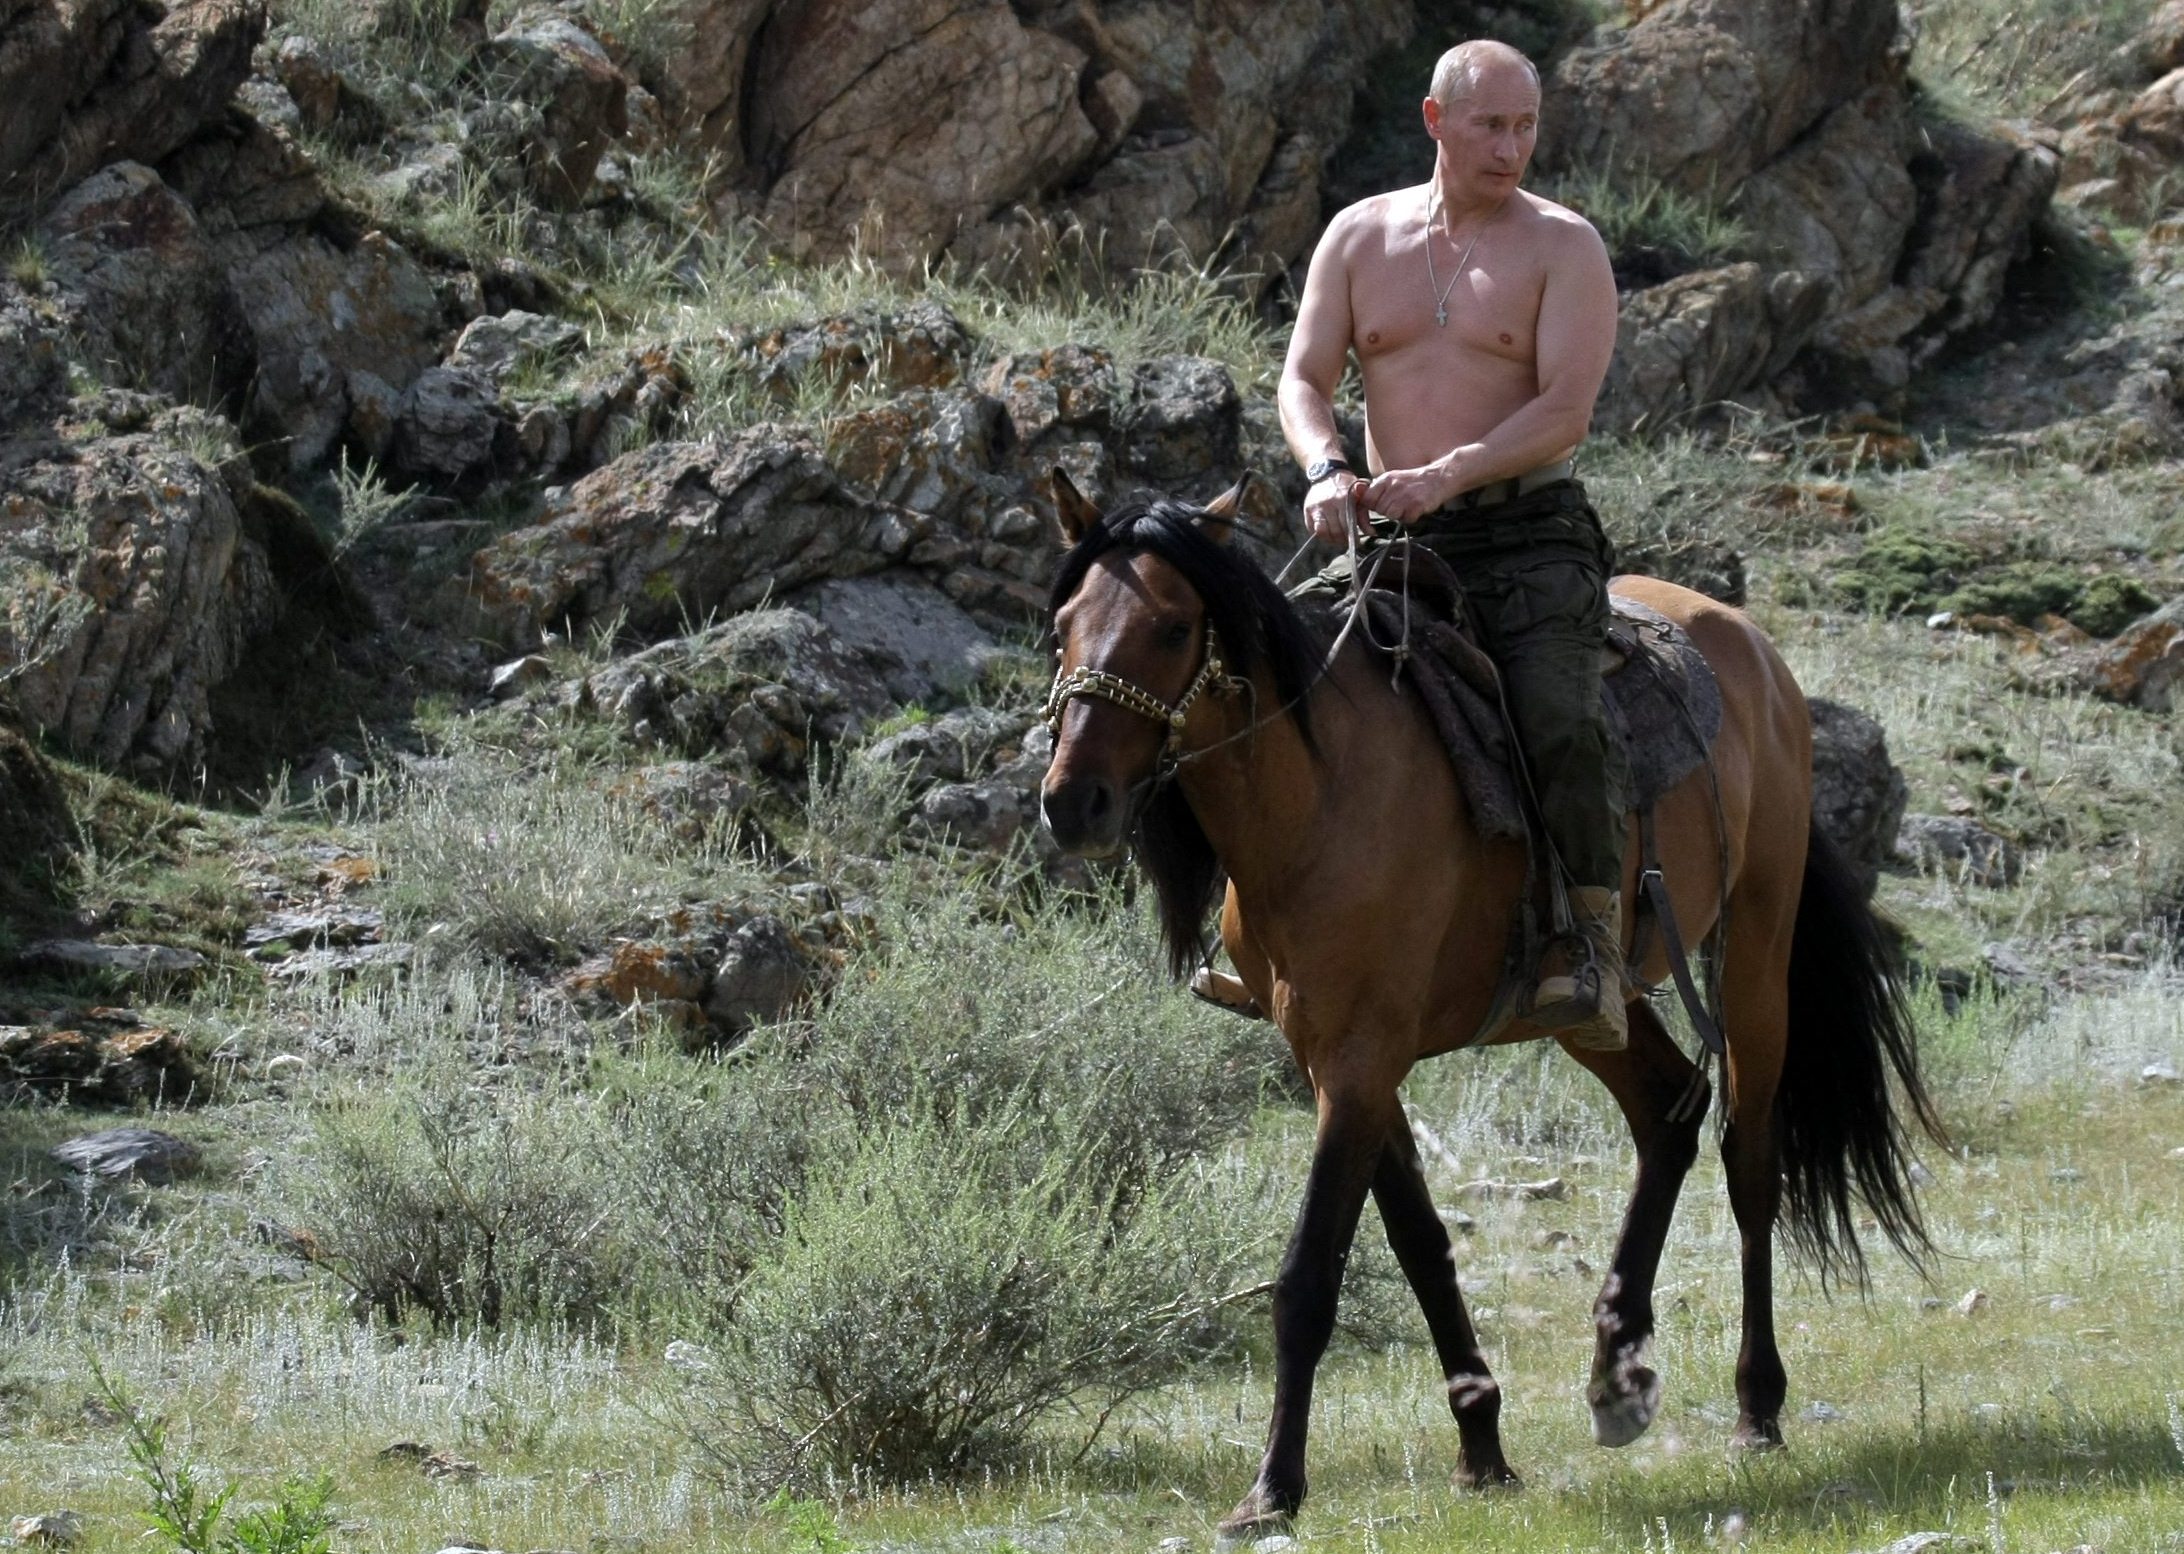 Обои на телефон Путин и Трамп на коне